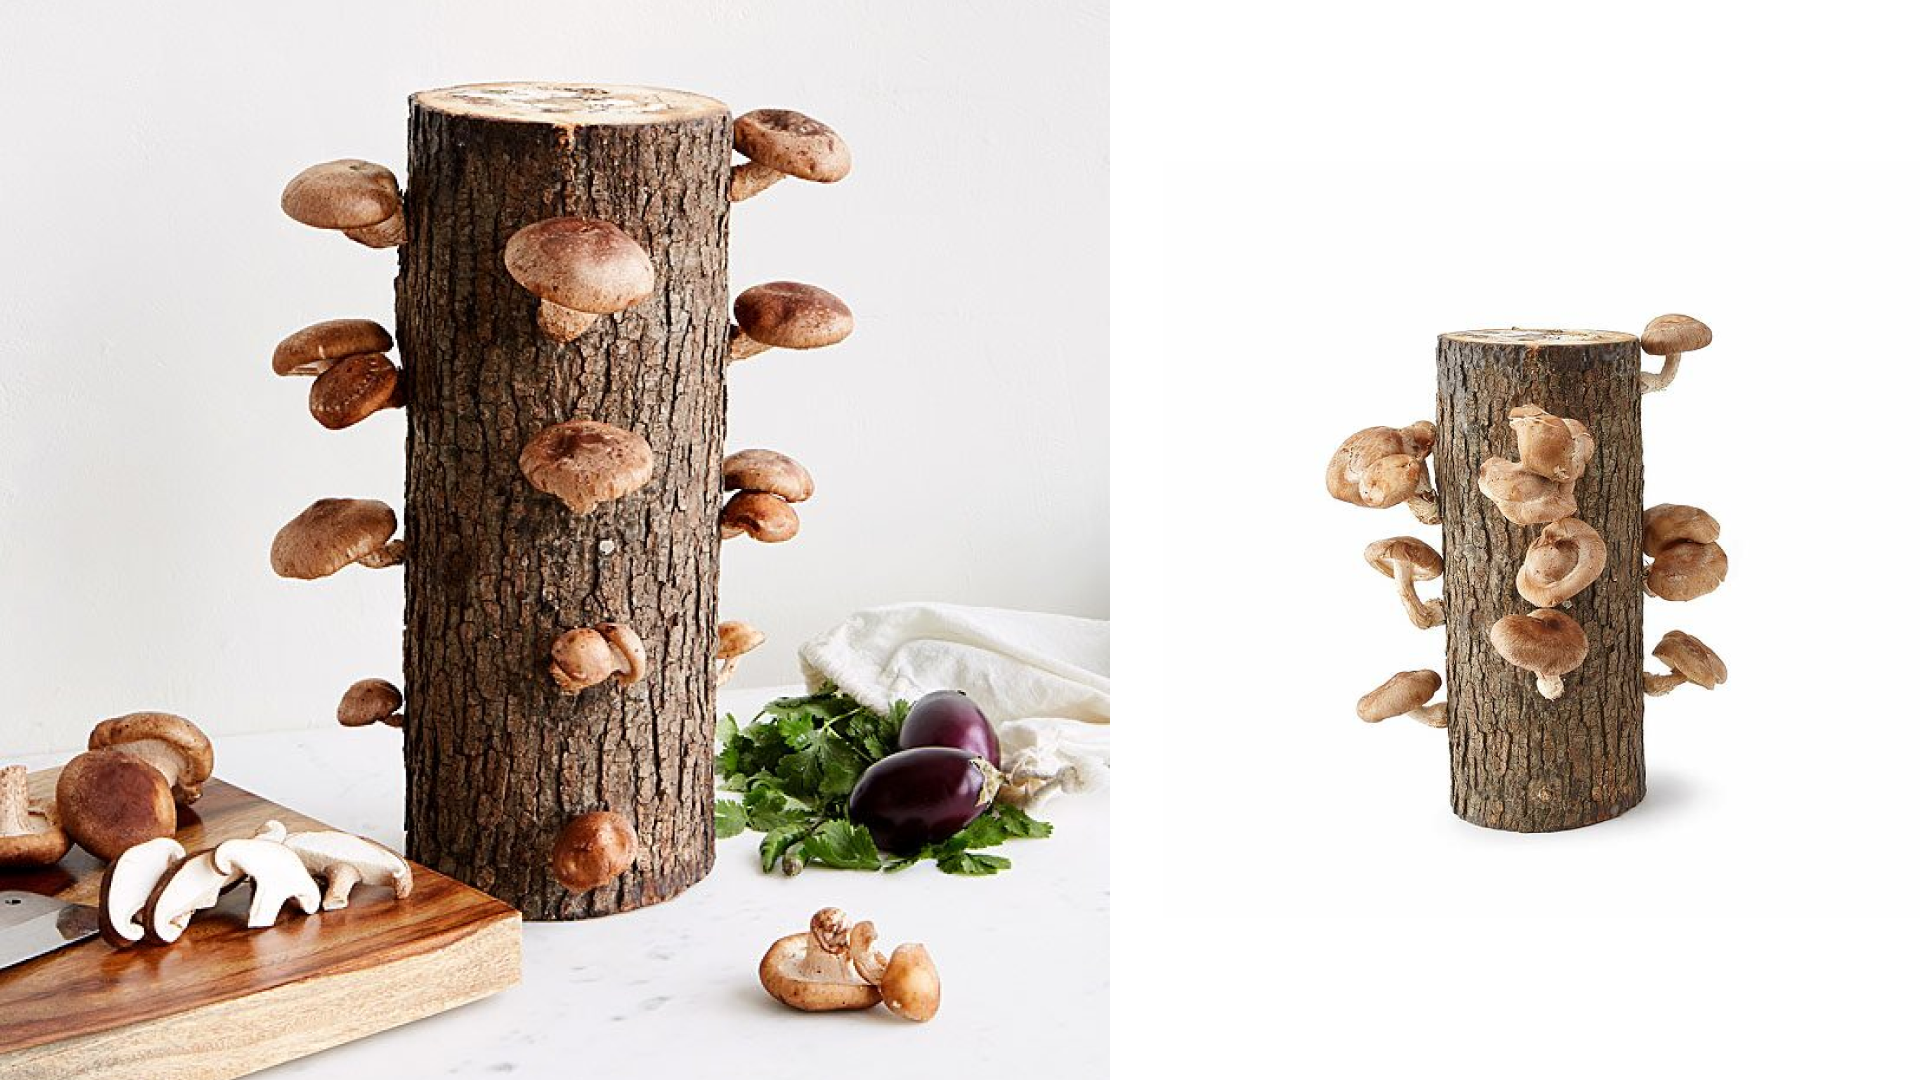 A mushroom-growing kit 